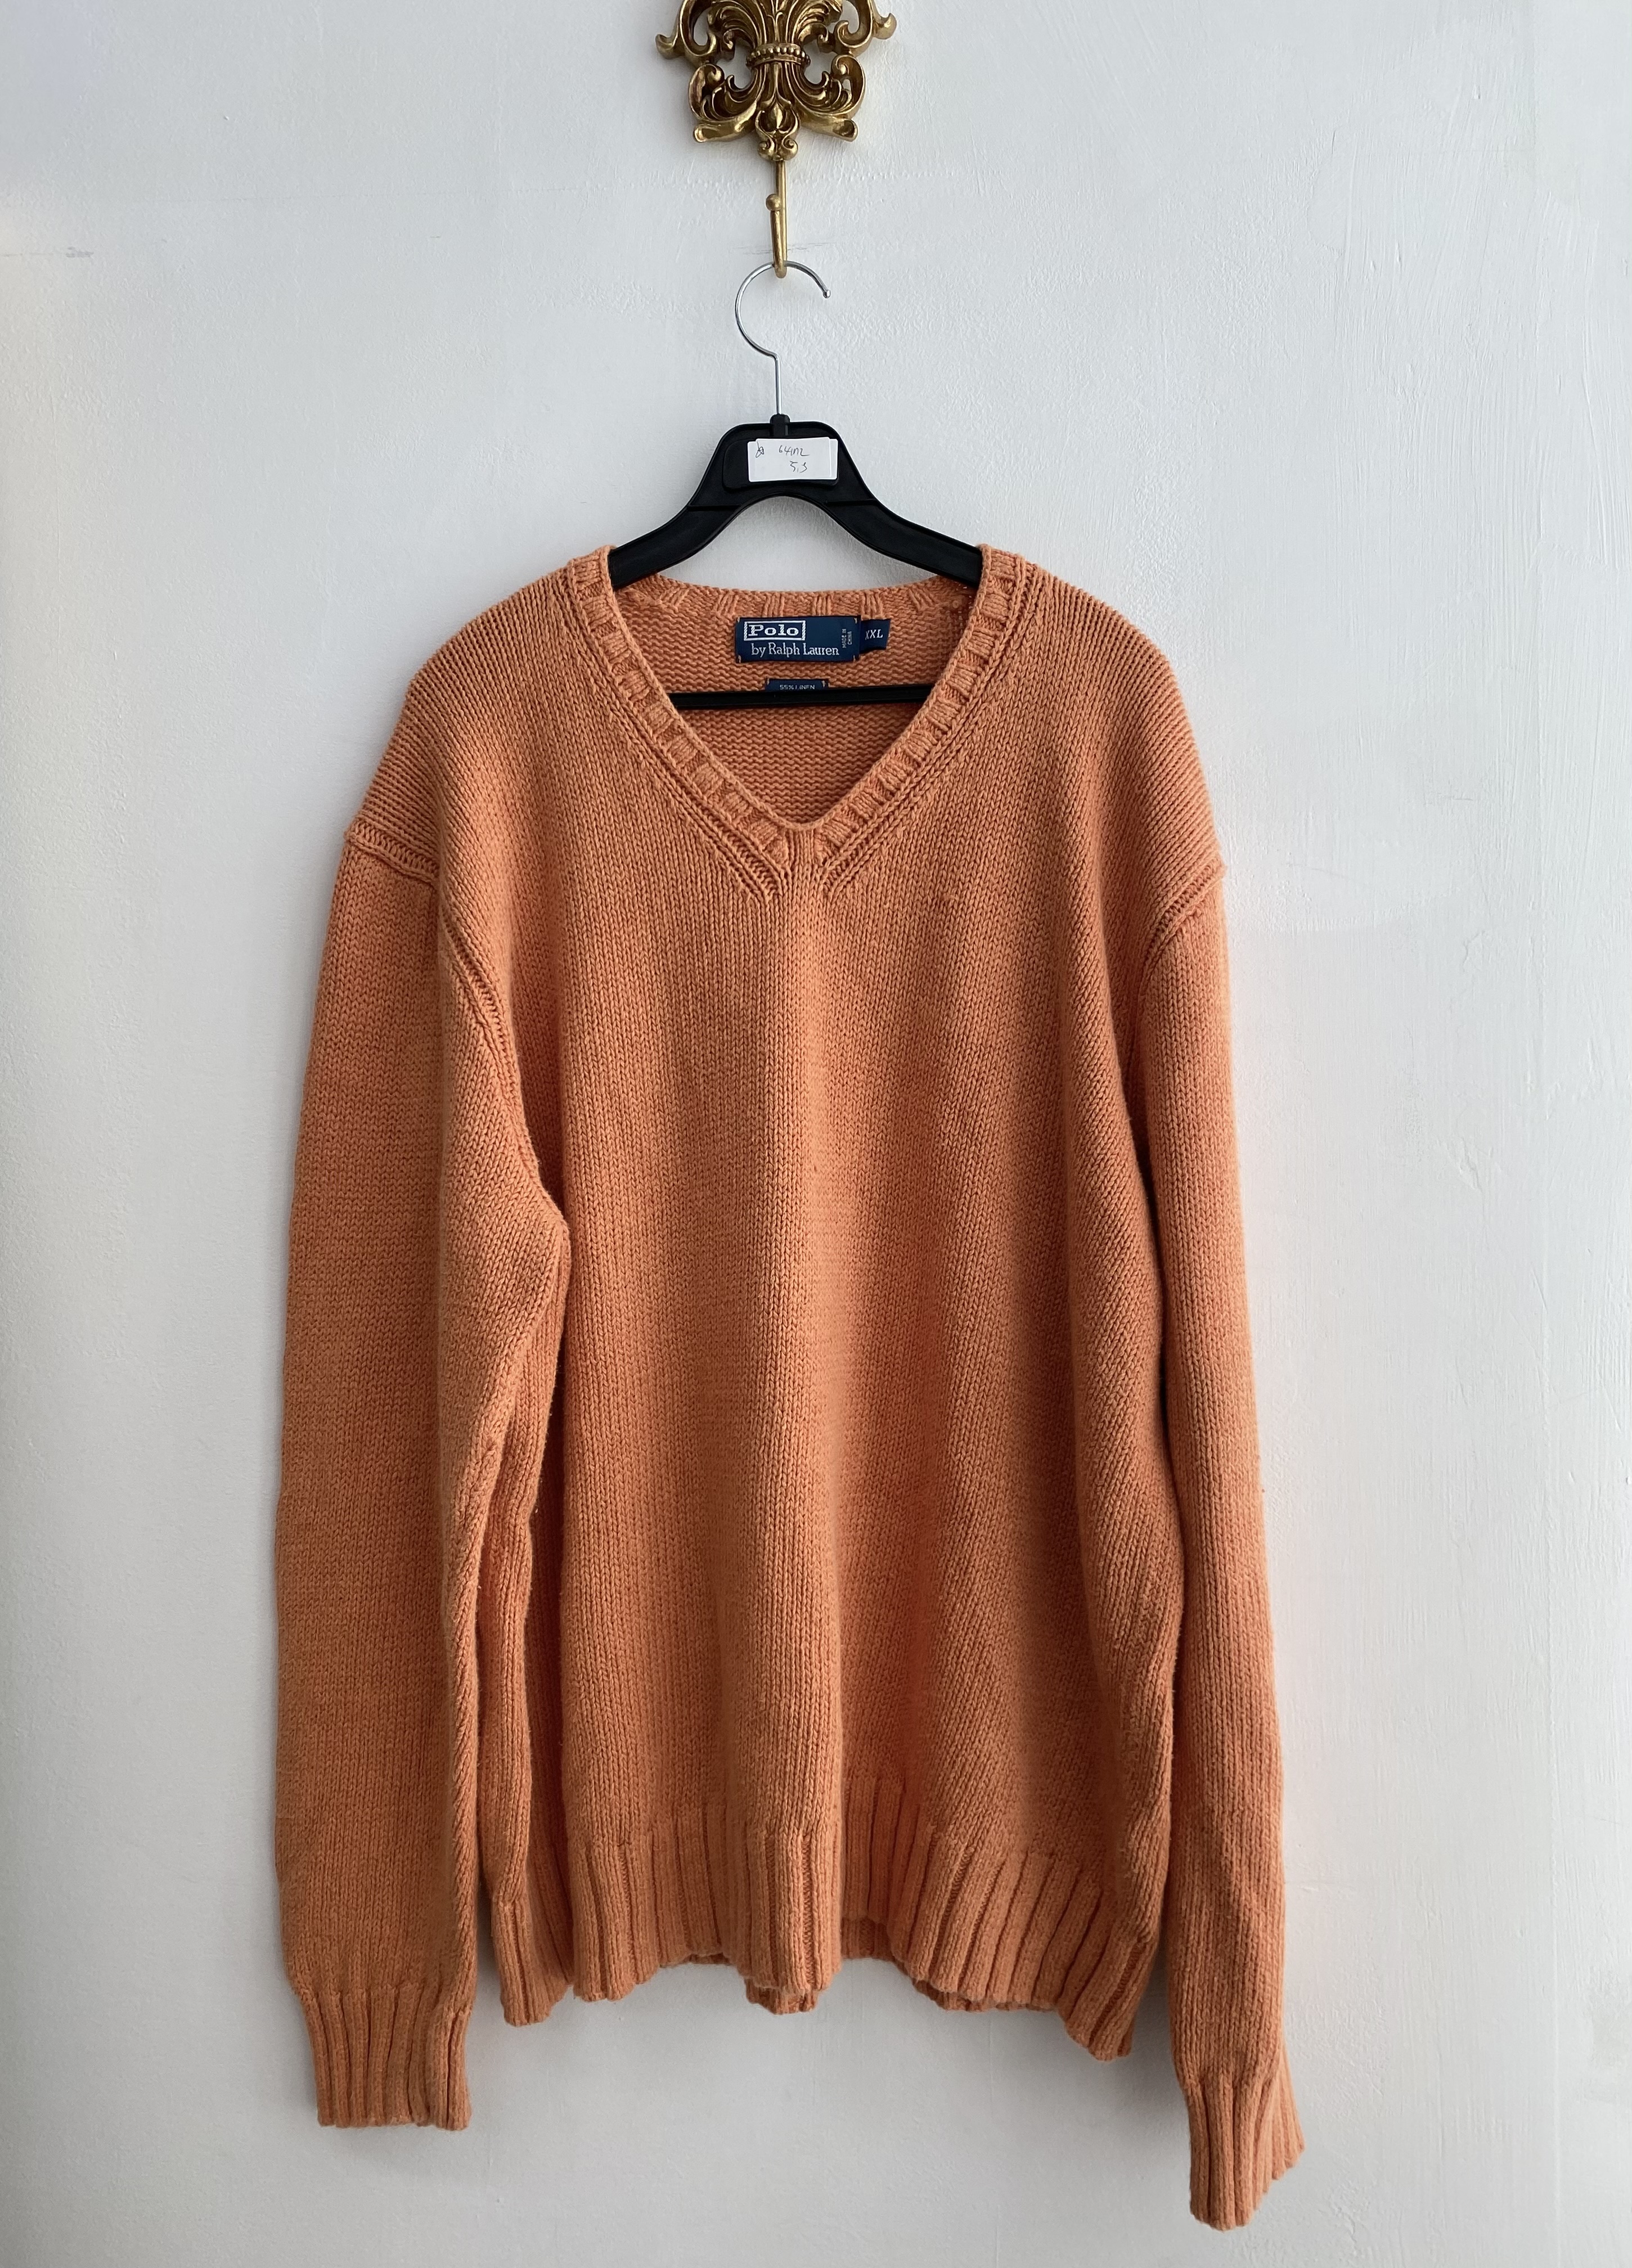 Polo Ralph Lauren orange linen cotton boxy fit knit